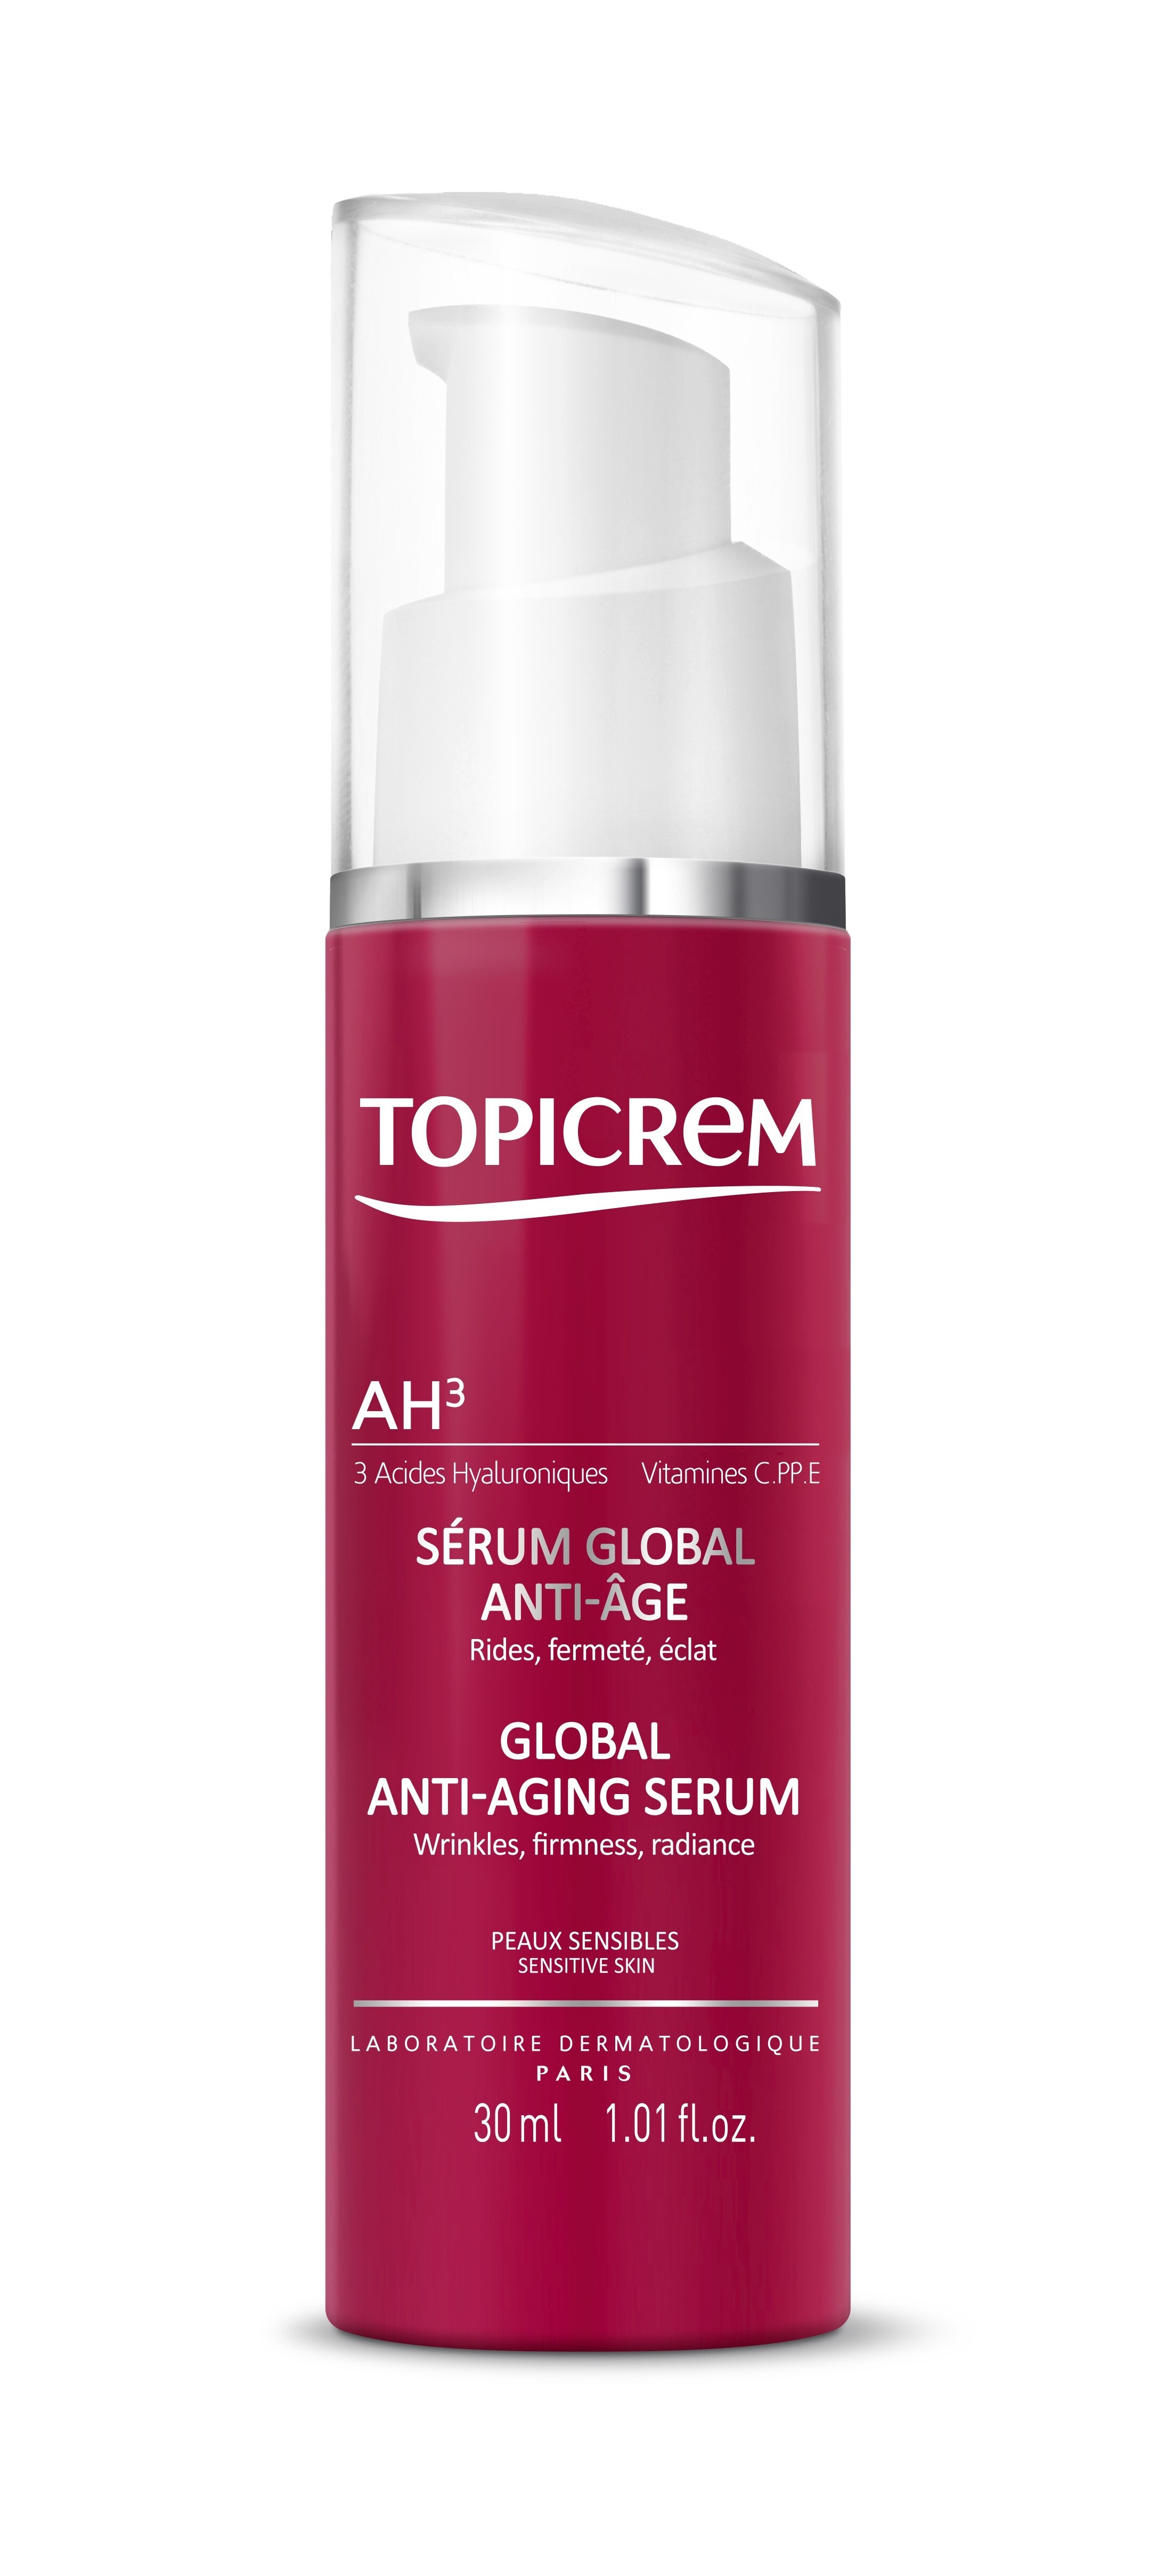 Topicrem Face Care AH3 Global Anti-Aging Serum